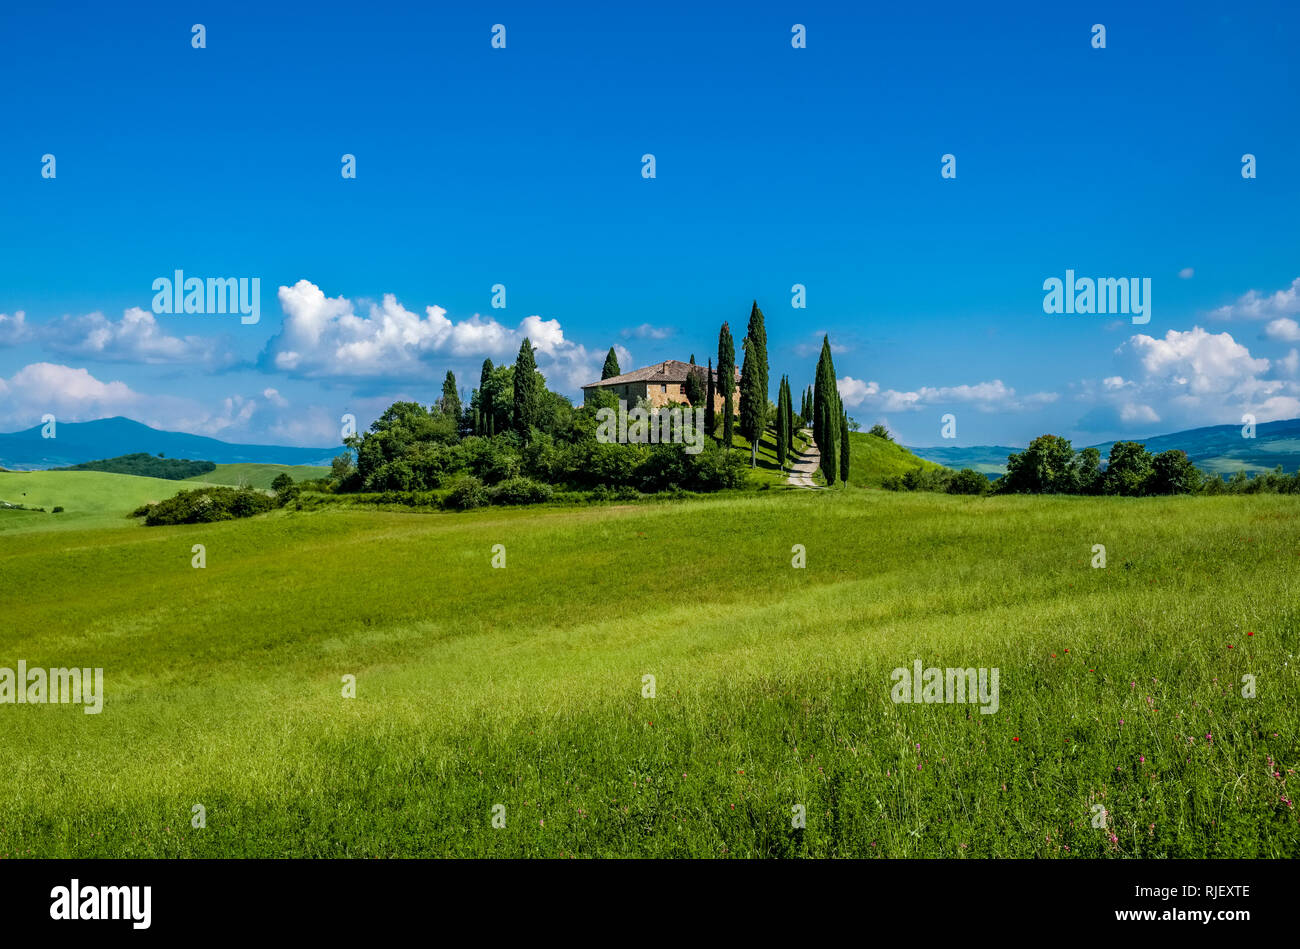 Vallonné typique campagne toscane, dans le Val d'Orcia avec la ferme Podere Belvedere sur une colline, les champs et les cyprès Banque D'Images